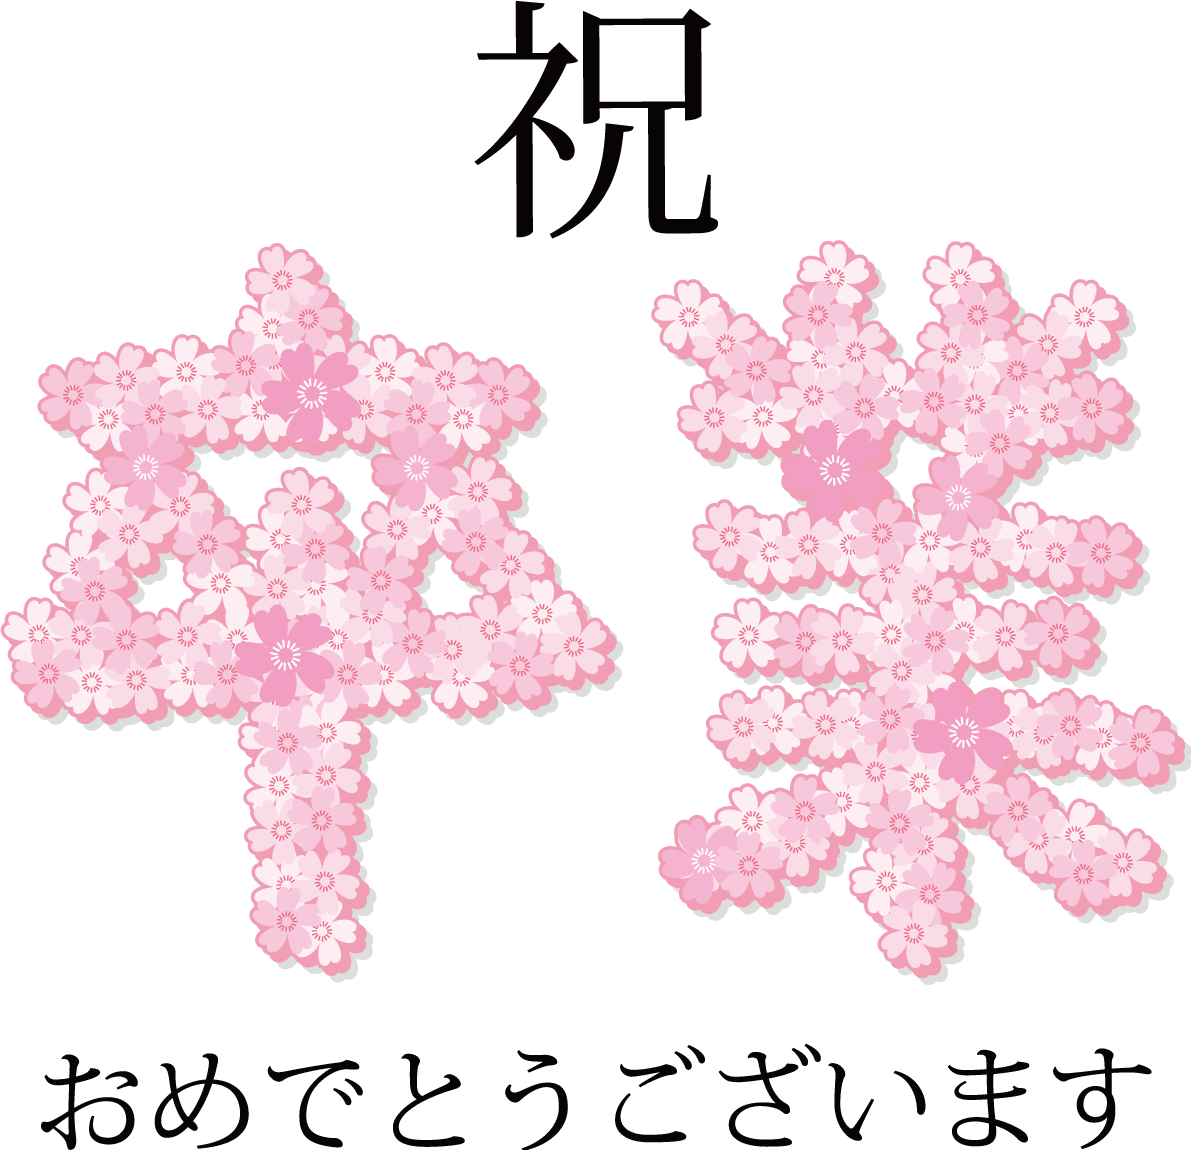 祝 卒業おしゃれイラスト 桜 文字デザイン イラスト素材 超多くの無料かわいいイラスト素材